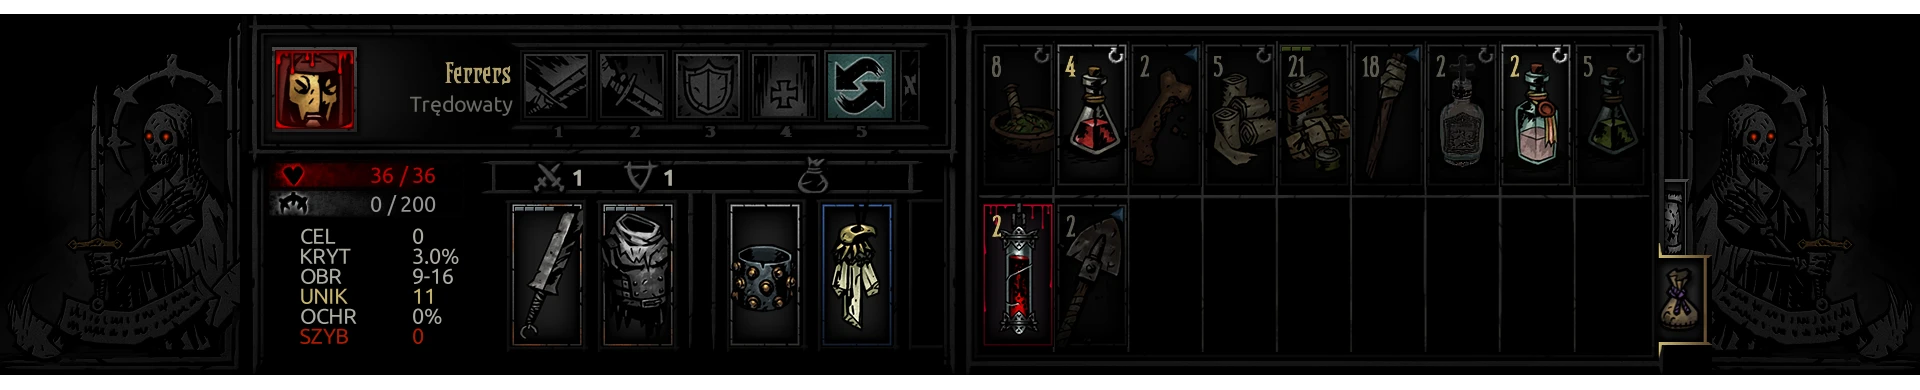 darkest dungeon inventory expansion mod